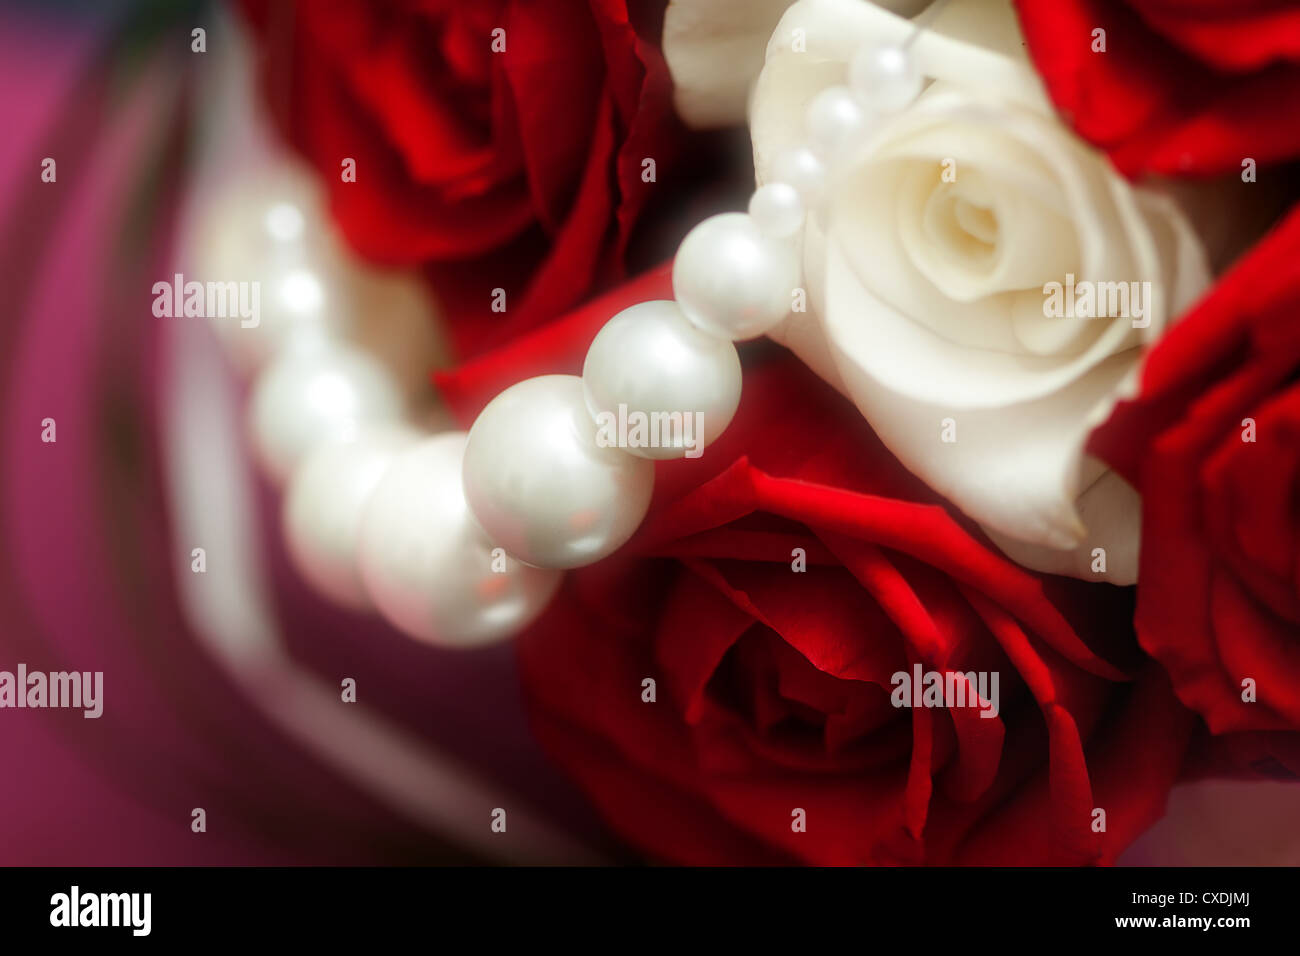 Rouge et blanc fleurs roses avec des perles Banque D'Images